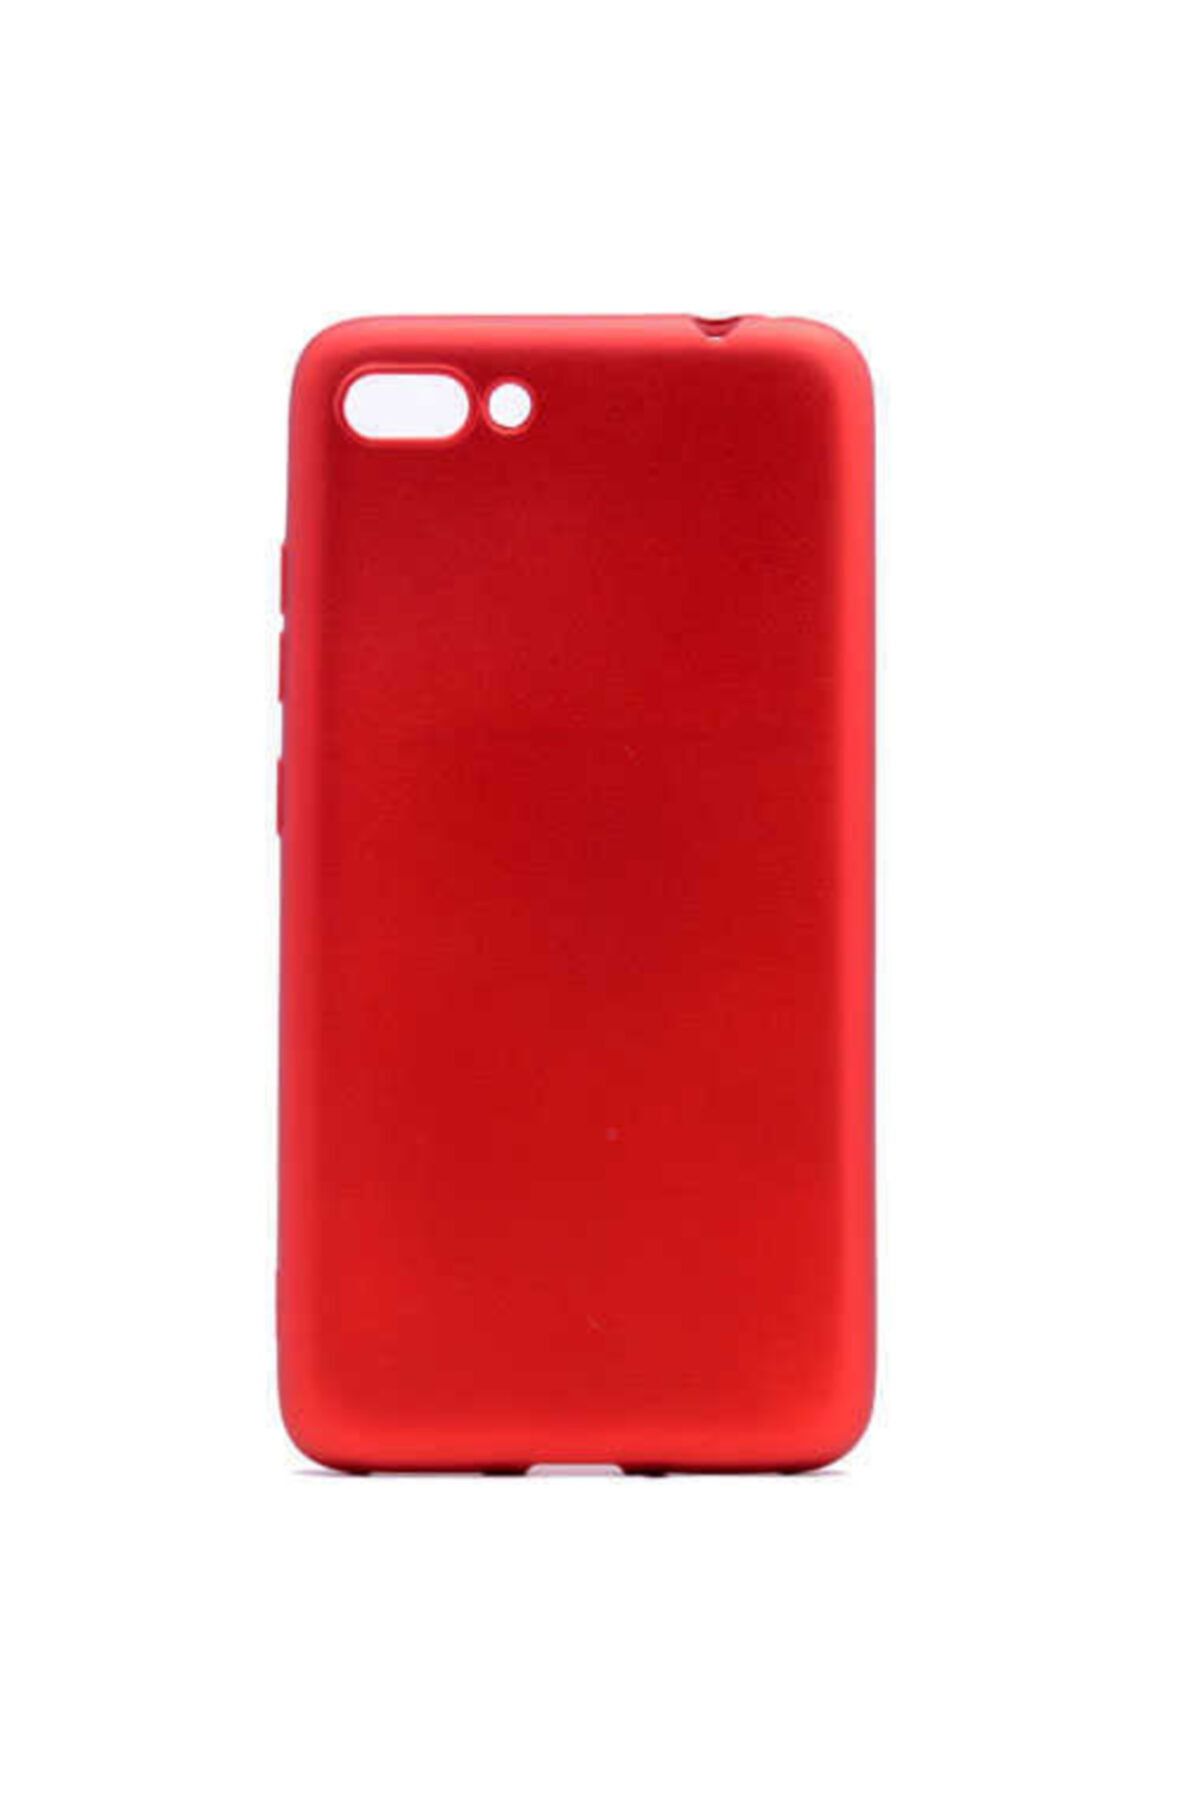 Dijimedia Asus Zenfone 4 Max Zc554kl Premier Silikon Kırmızı Kılıf